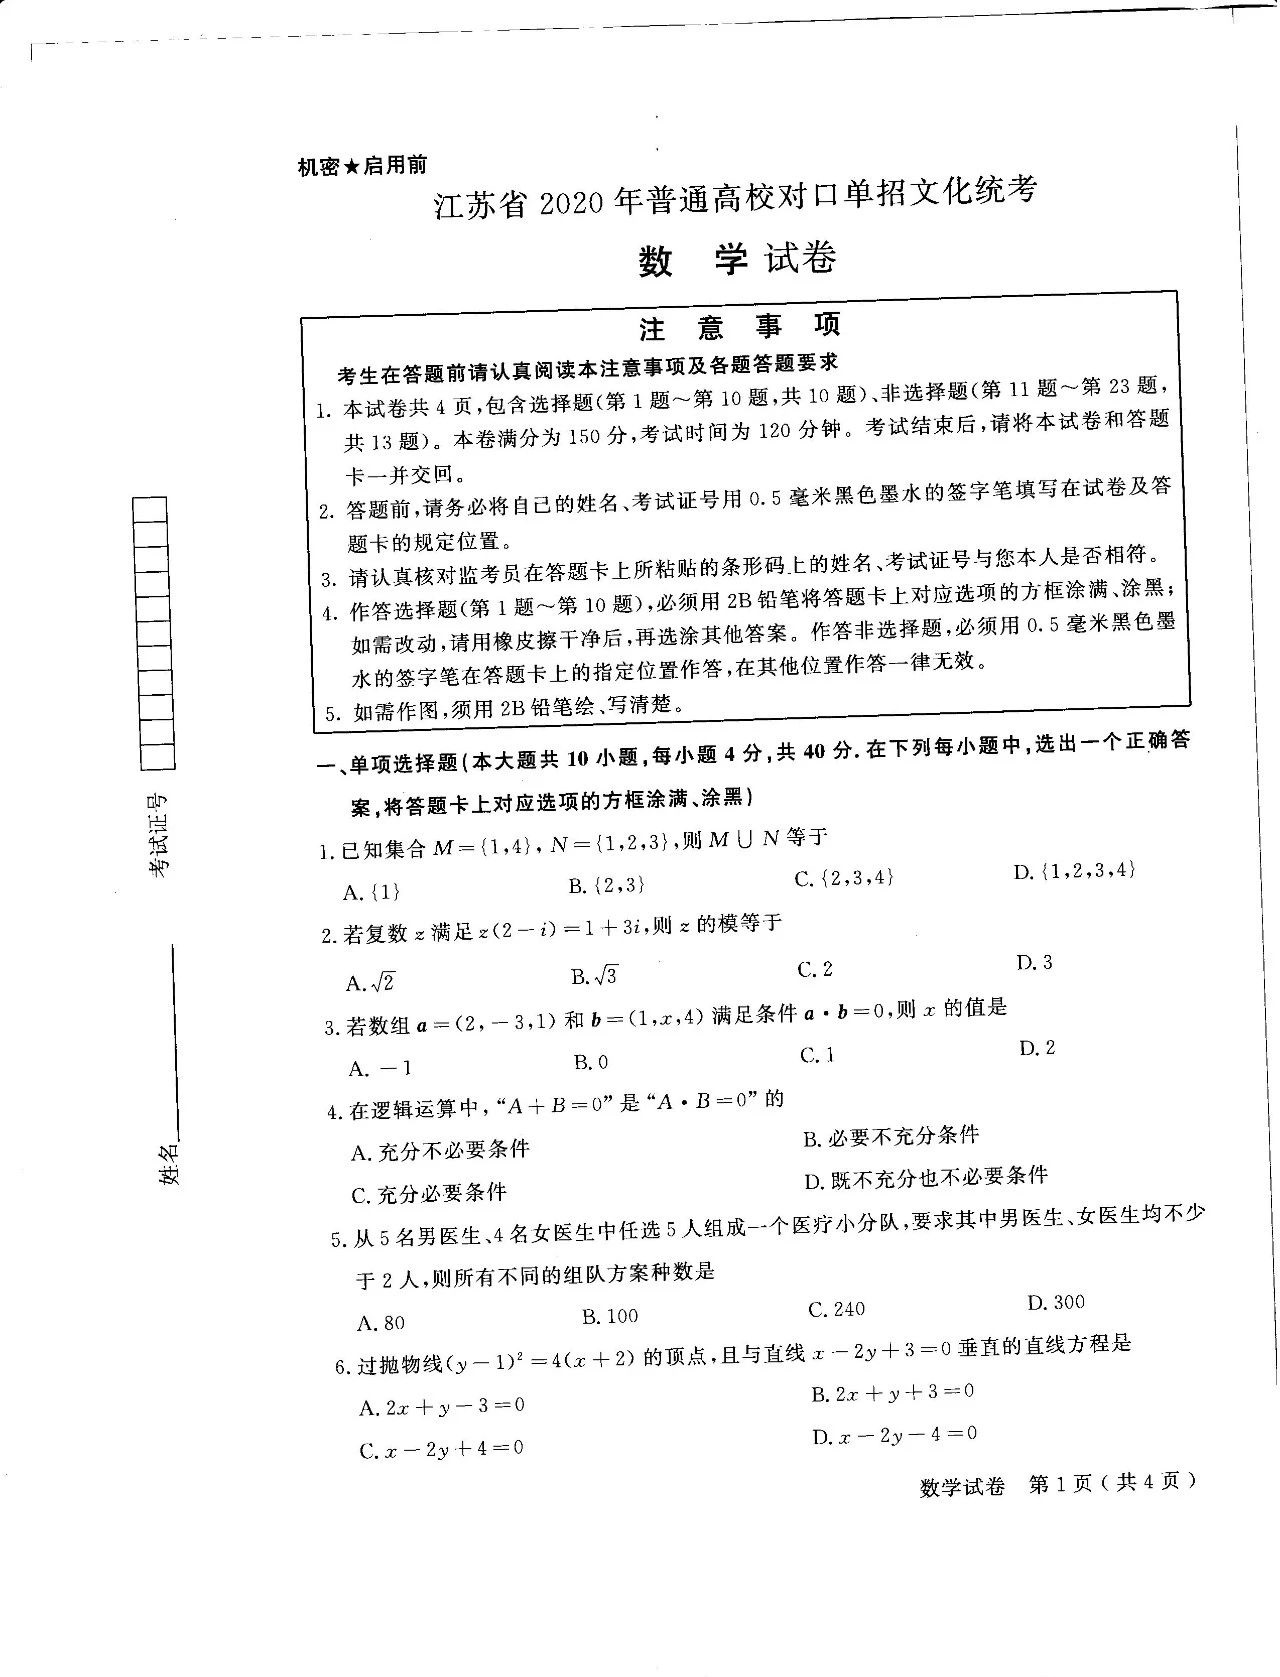 江苏省2020年普通高考对口单招文化统考数学试题